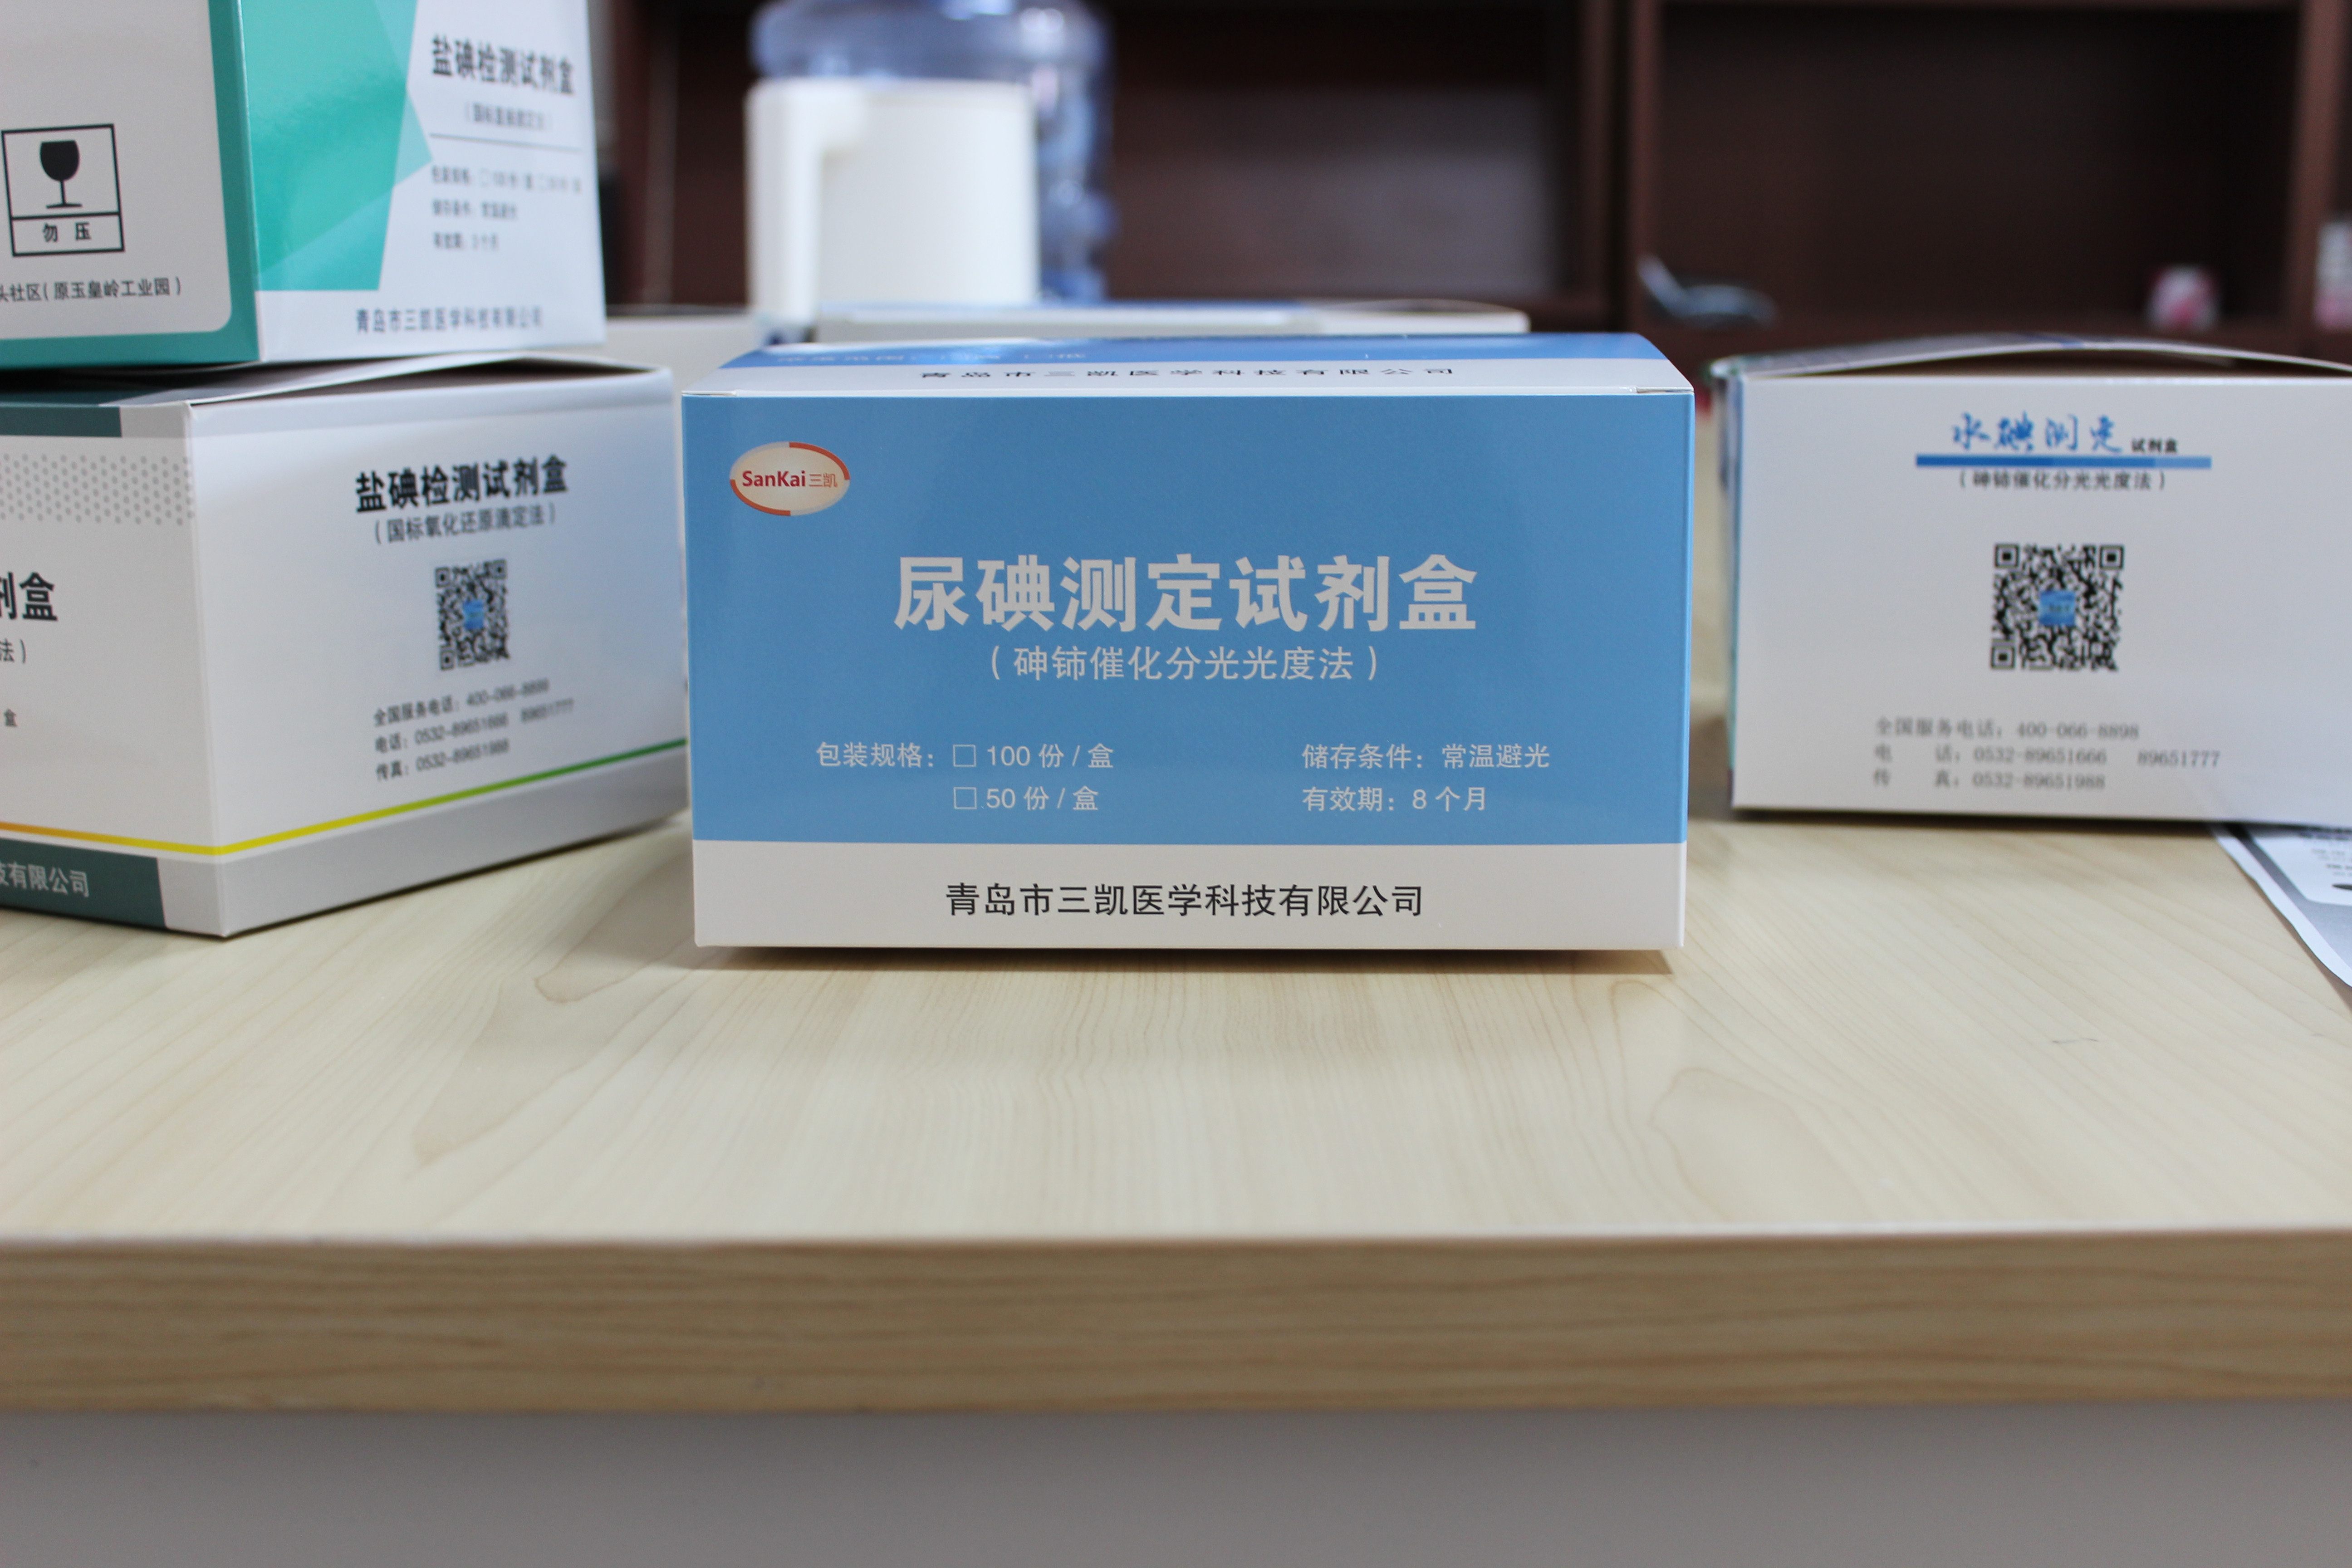 尿碘试剂盒